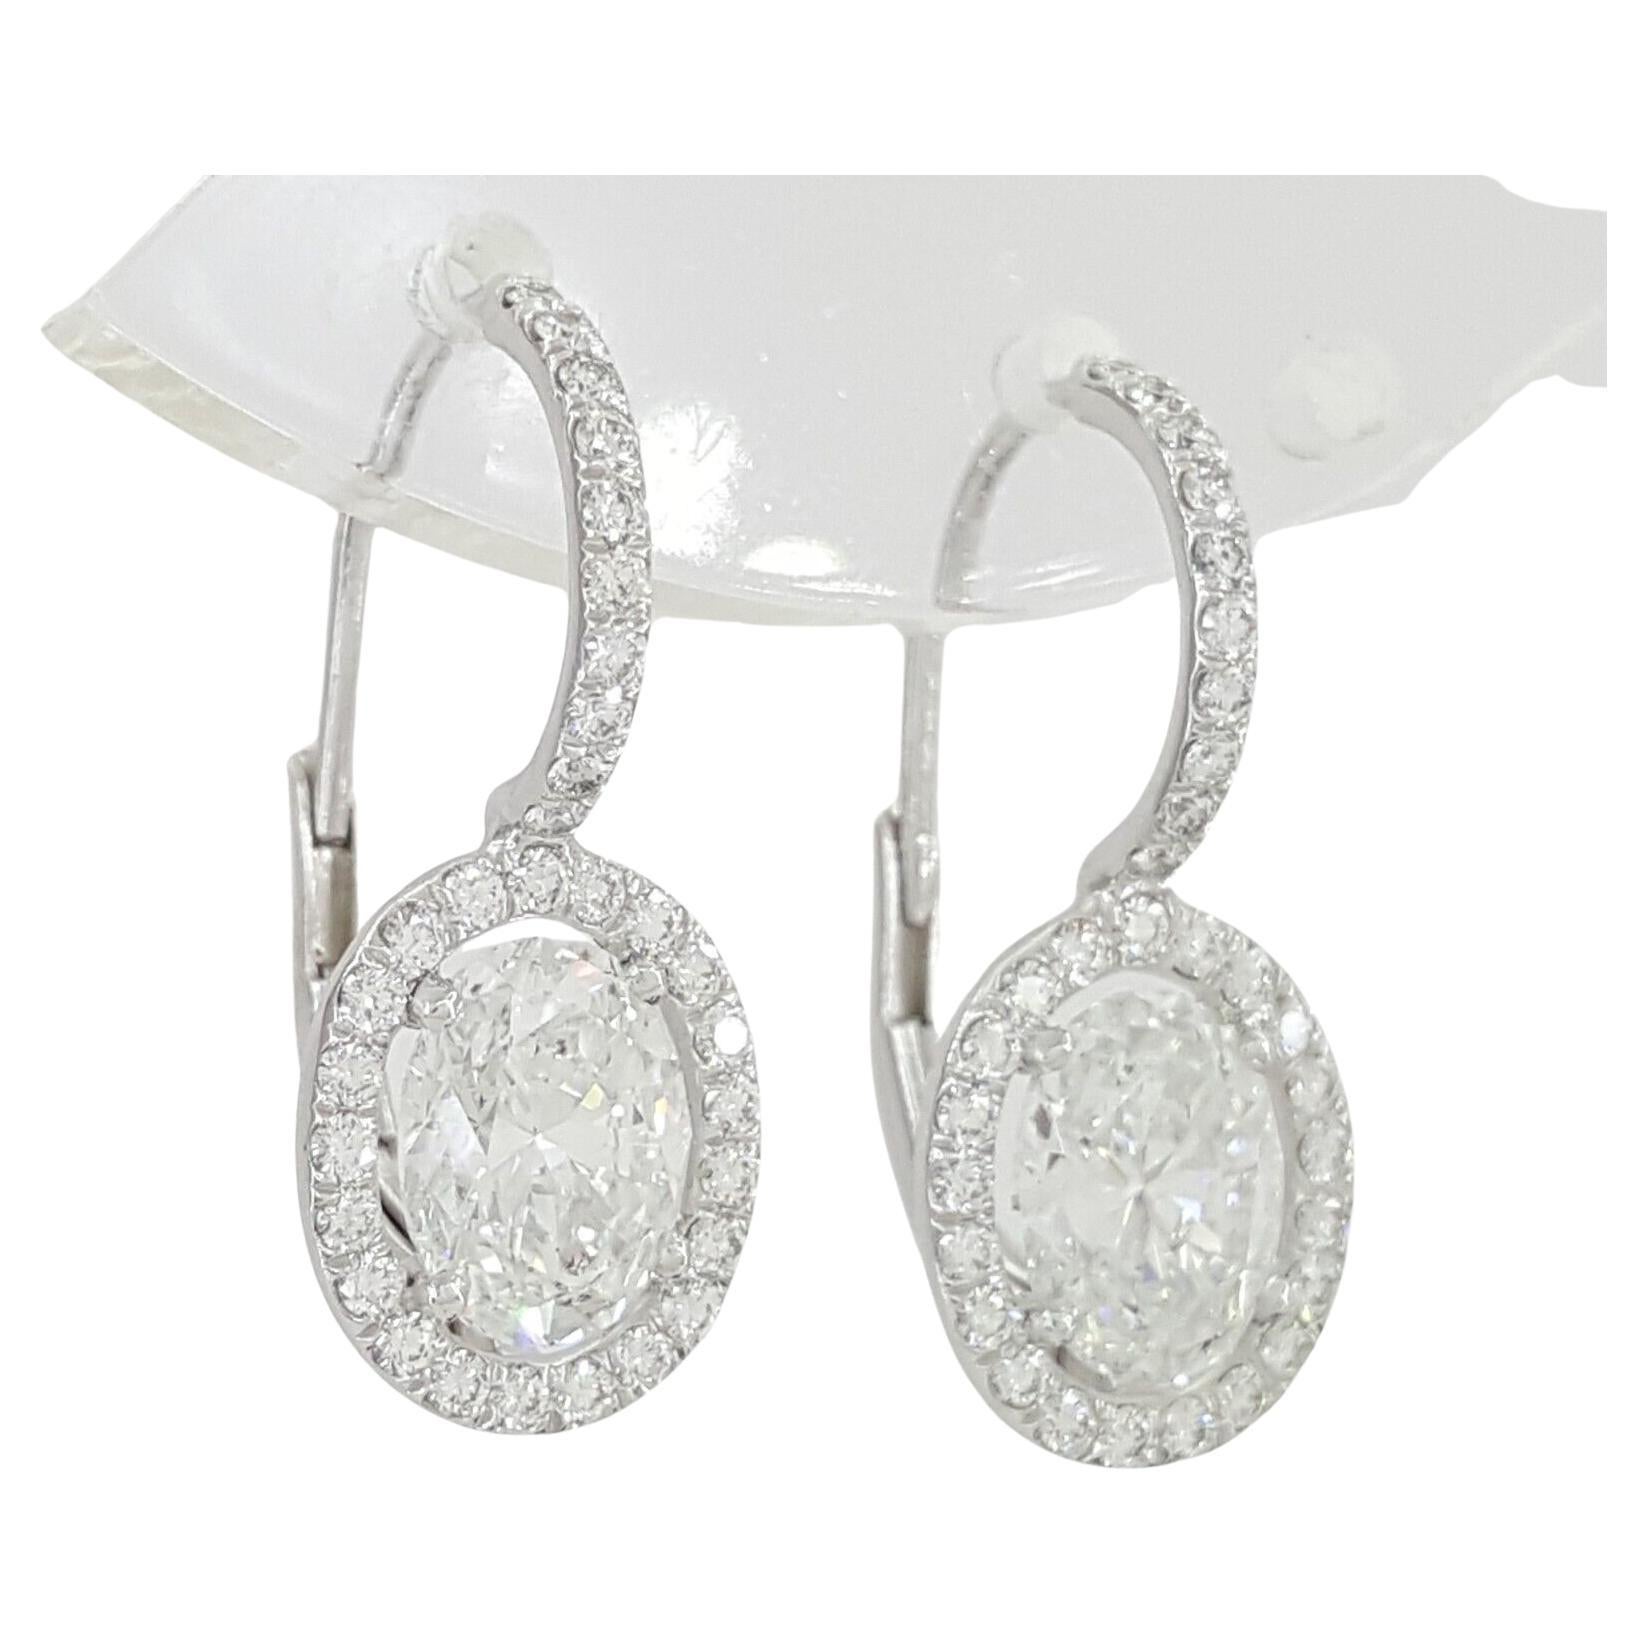 GIA-zertifizierte 1,60 Karat Diamant-Ohrringe mit rundem Brillantschliff.